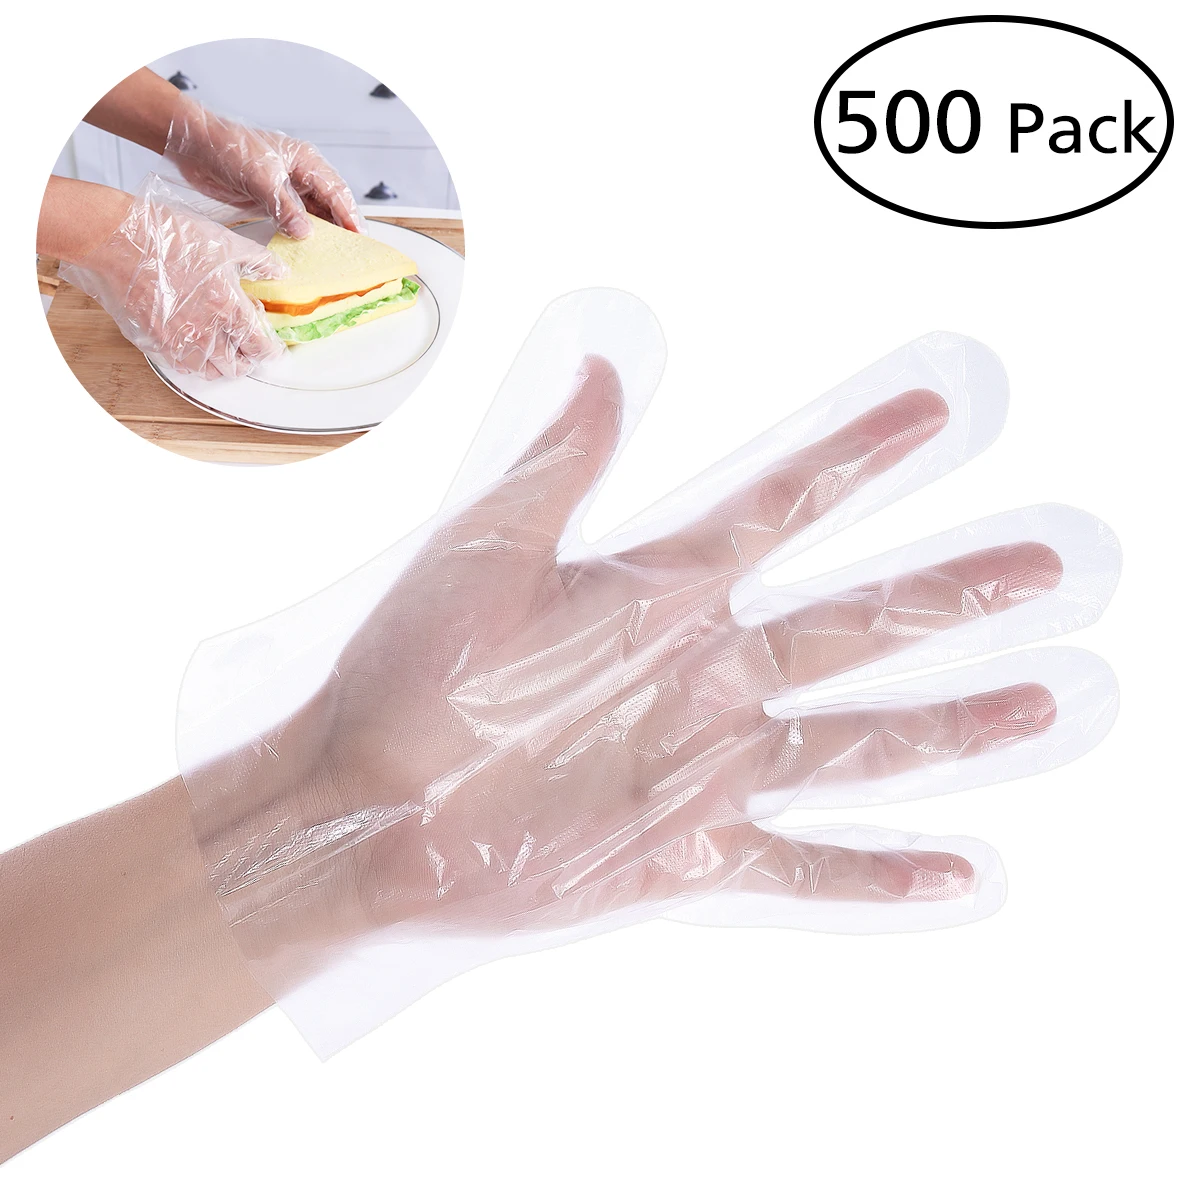 500 шт PE одноразовая пища обслуживание полиэтиленовые перчатки для дома для кухни, ресторана, приготовления еды промышленная медицинская Чистка